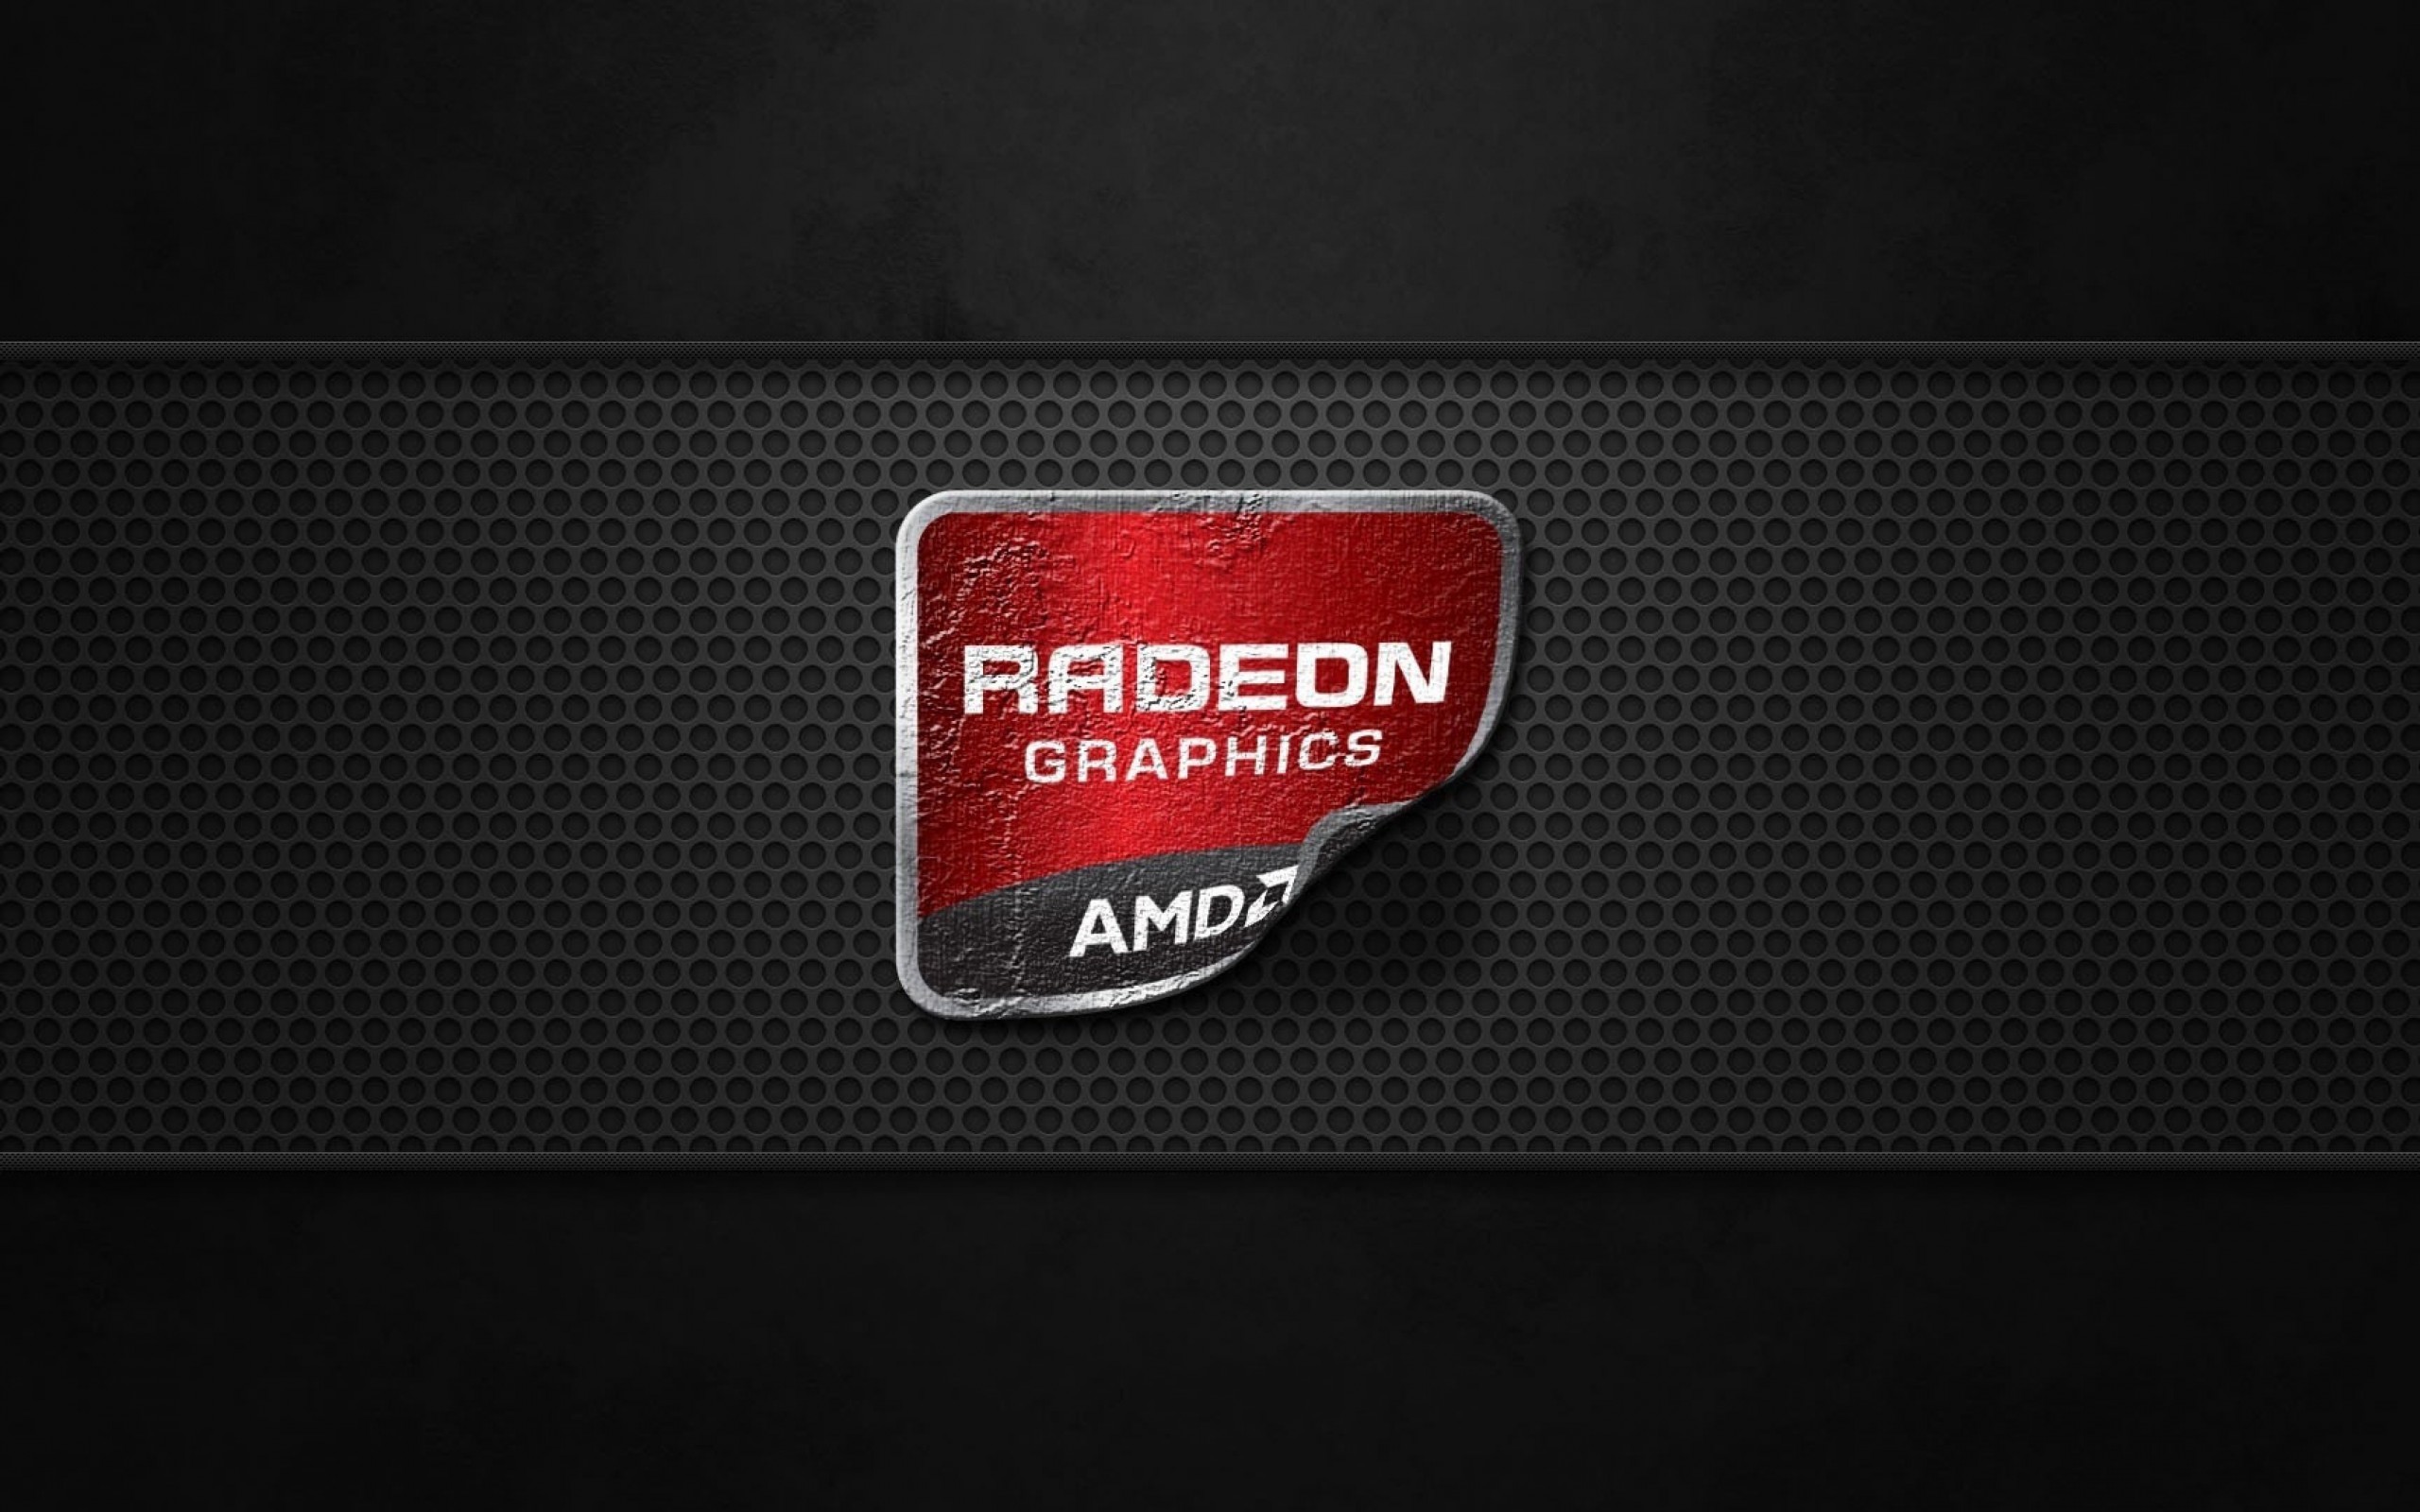 AMD Radeon Graphics Wallpaper for Desktop 2560x1600